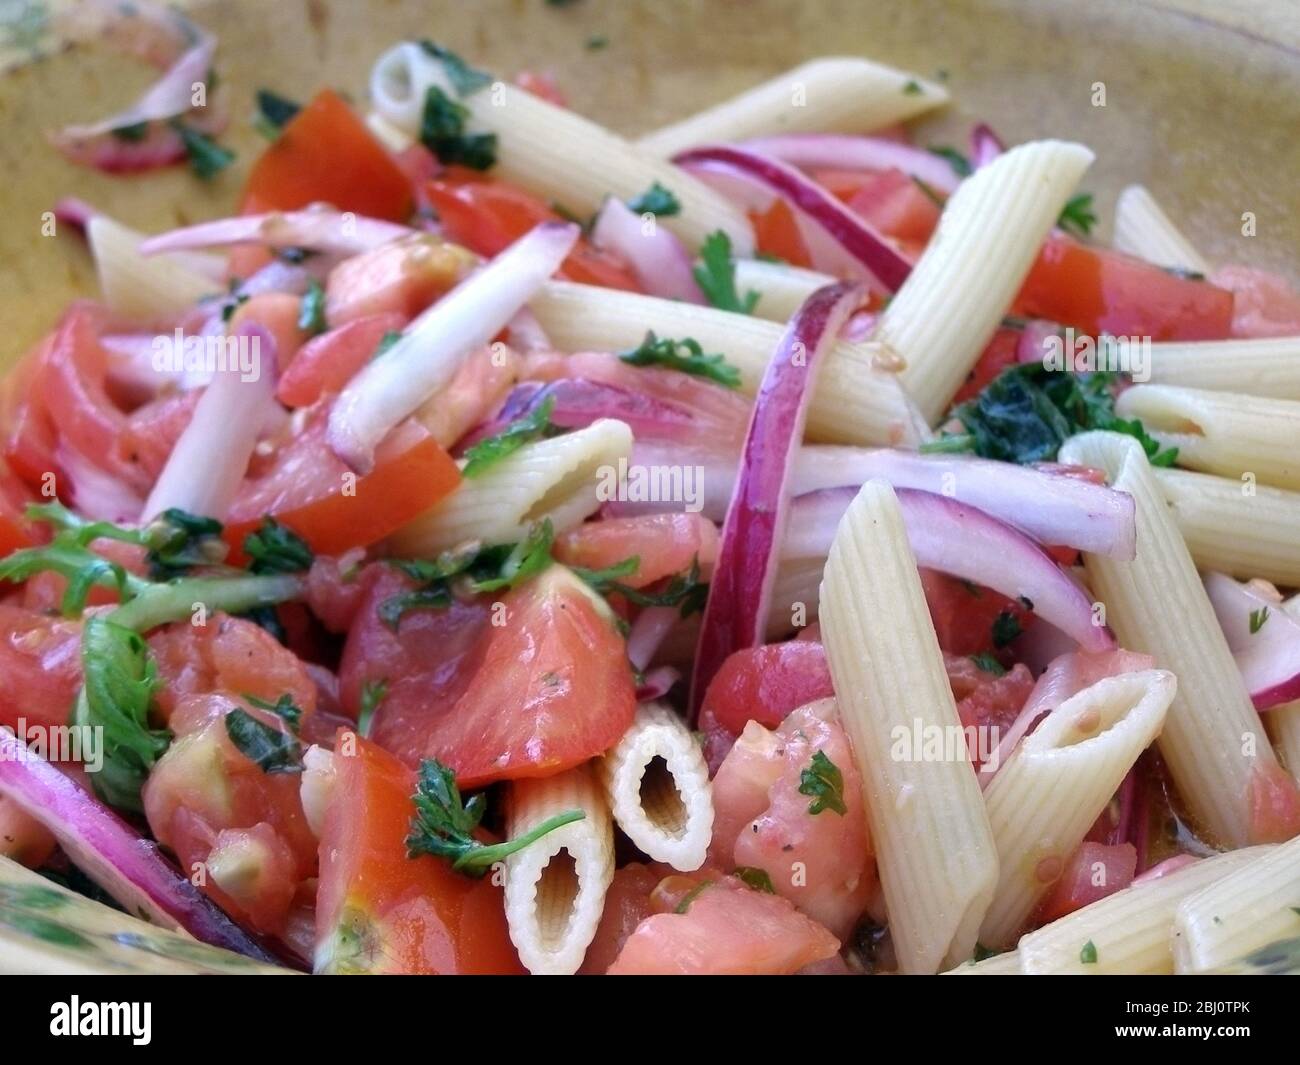 Salade de quartiers de tomates, oignons rouges, formes de pâtes, persil, vinaigre de vin rouge et vinaigrette à l'huile d'olive - Banque D'Images